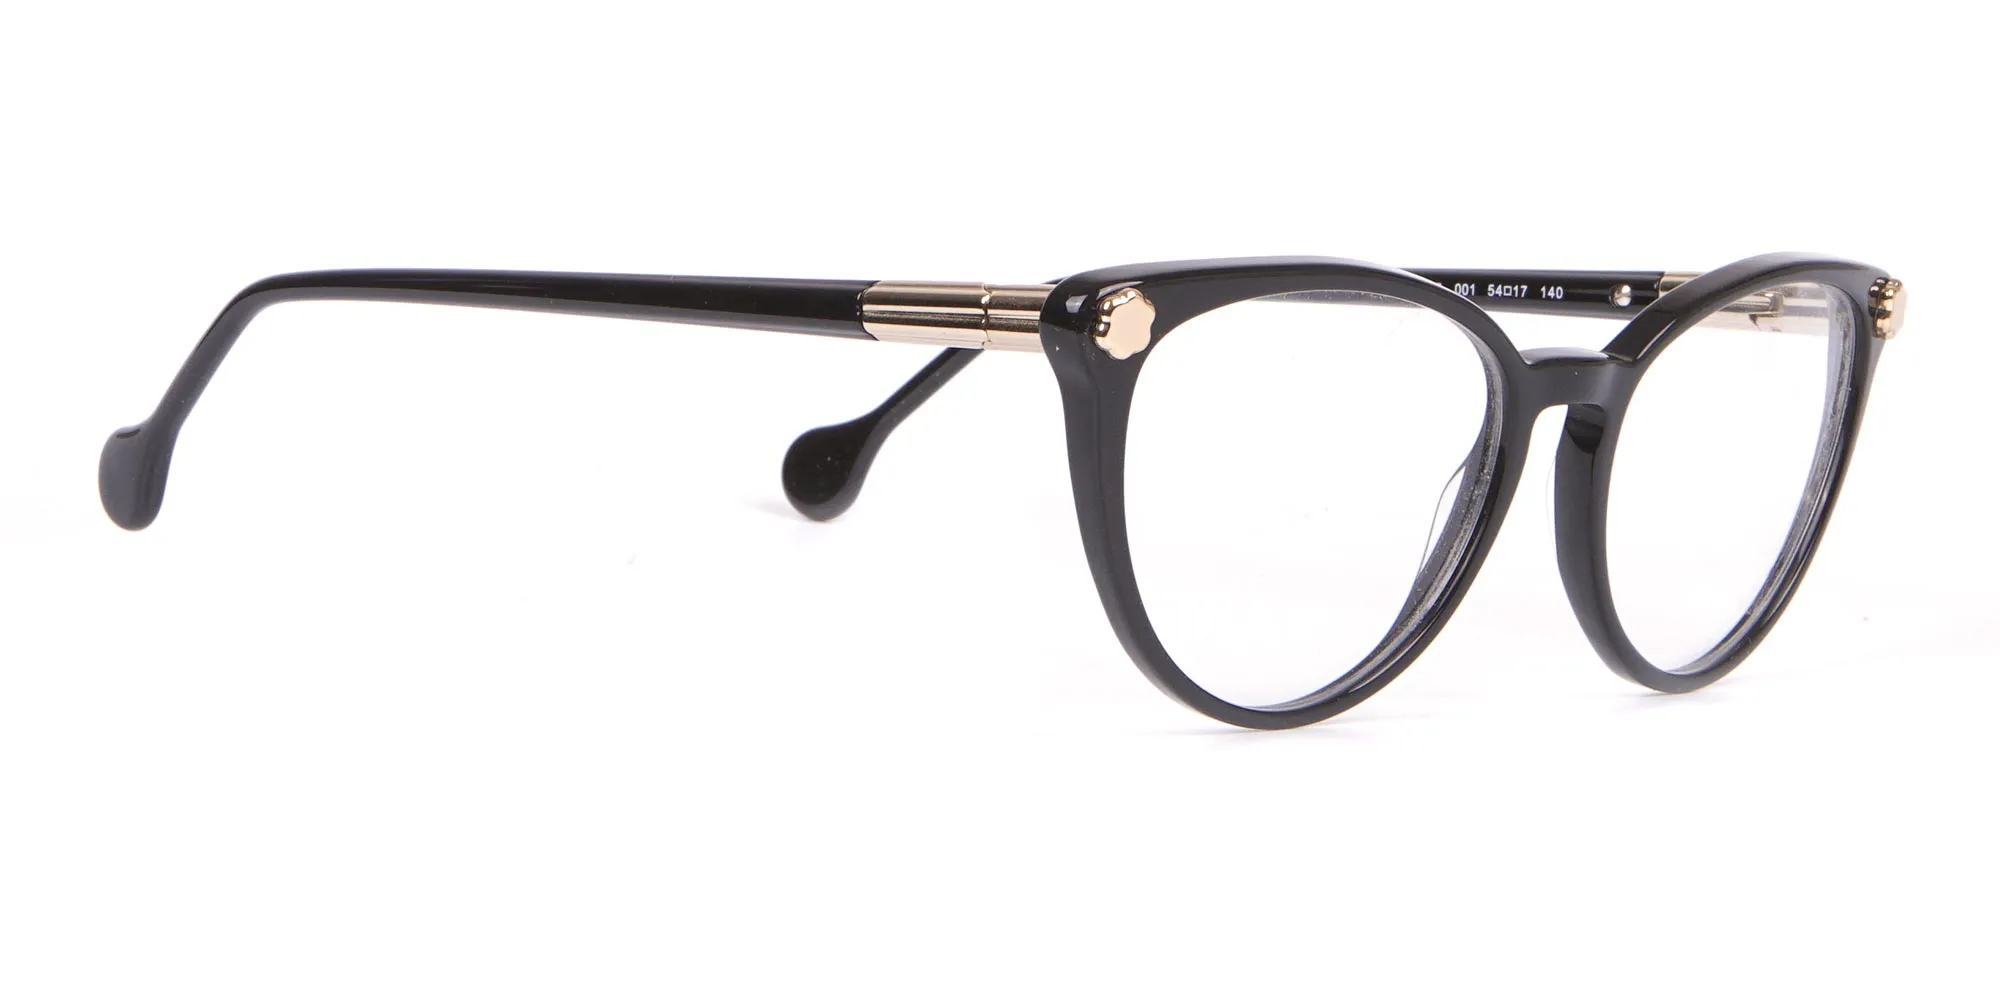 Salvatore Ferragamo SF2837 Women's Cateye Glasses Black-2